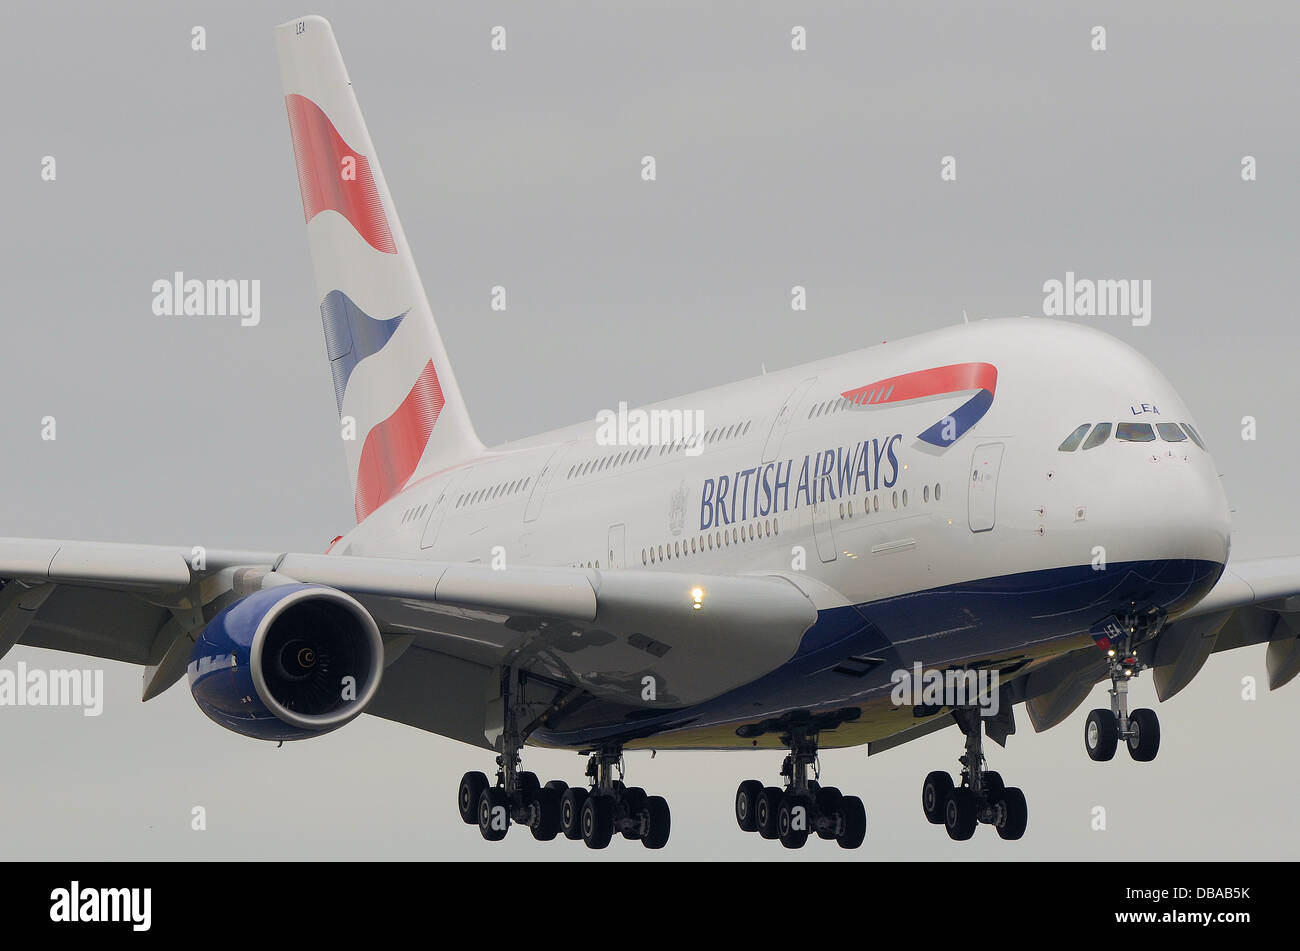 British Airways' erstes Airbus A380 'Super Jumbo' Jet-Linienflugzeug in Landekonfiguration. Die BA A380 G-XLEA wurde als erste in Betrieb genommen Stockfoto